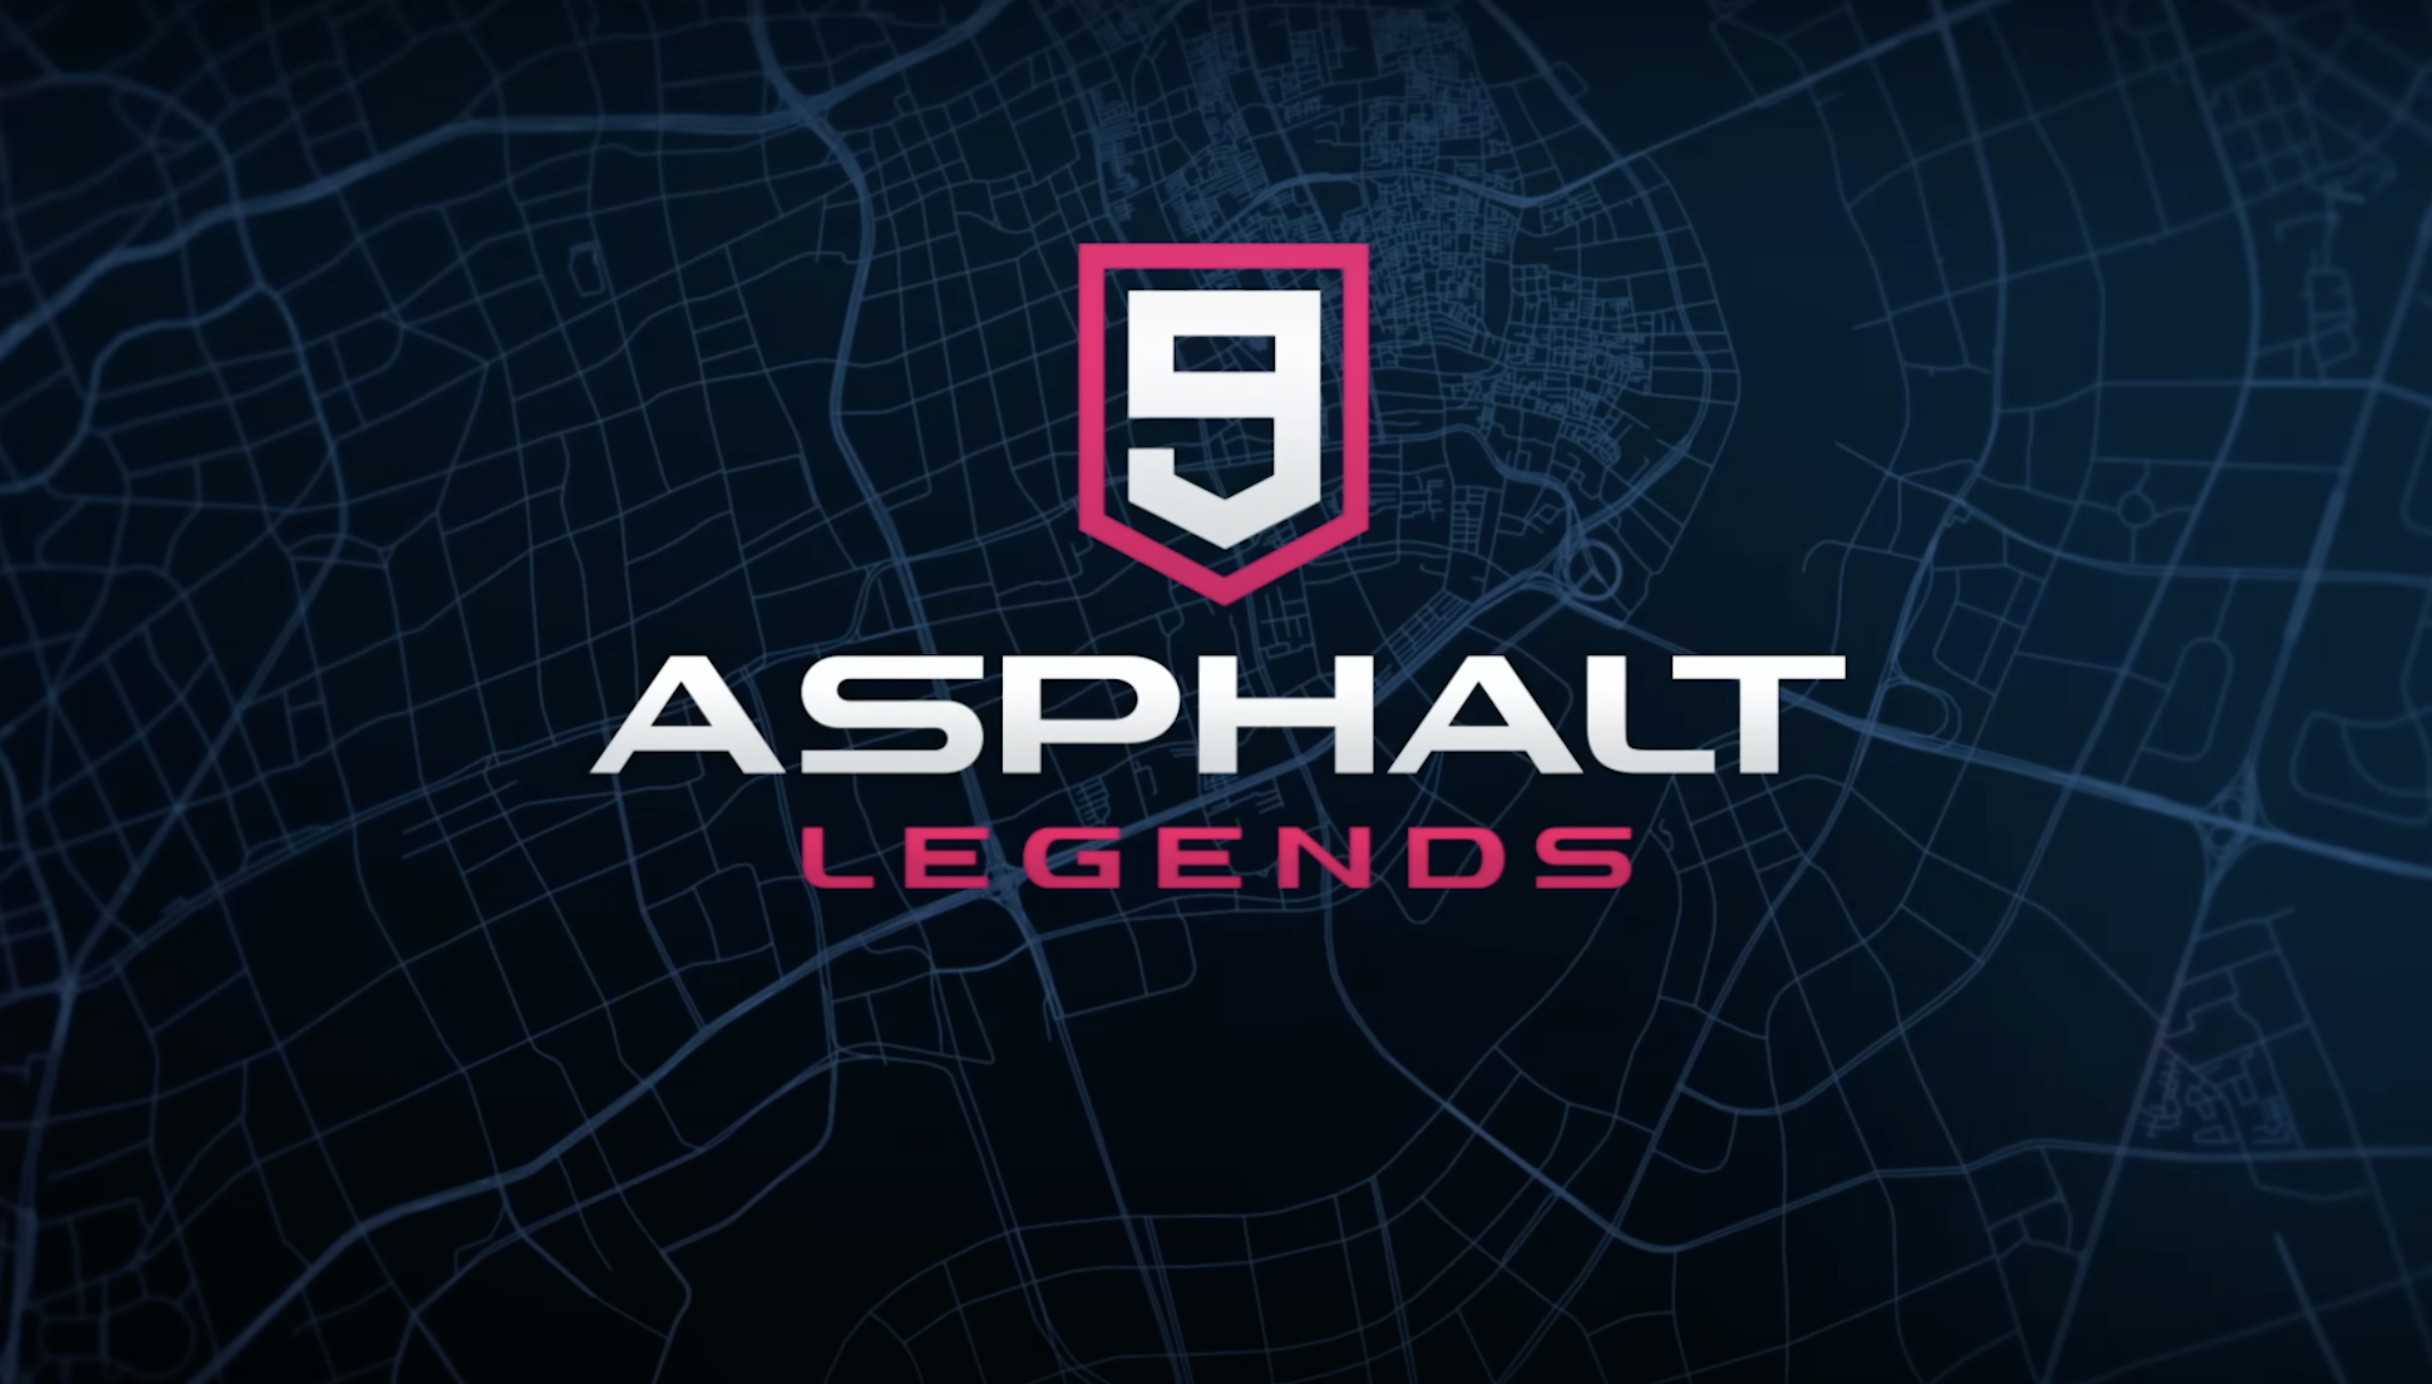 The Asphalt 9: Legends logo